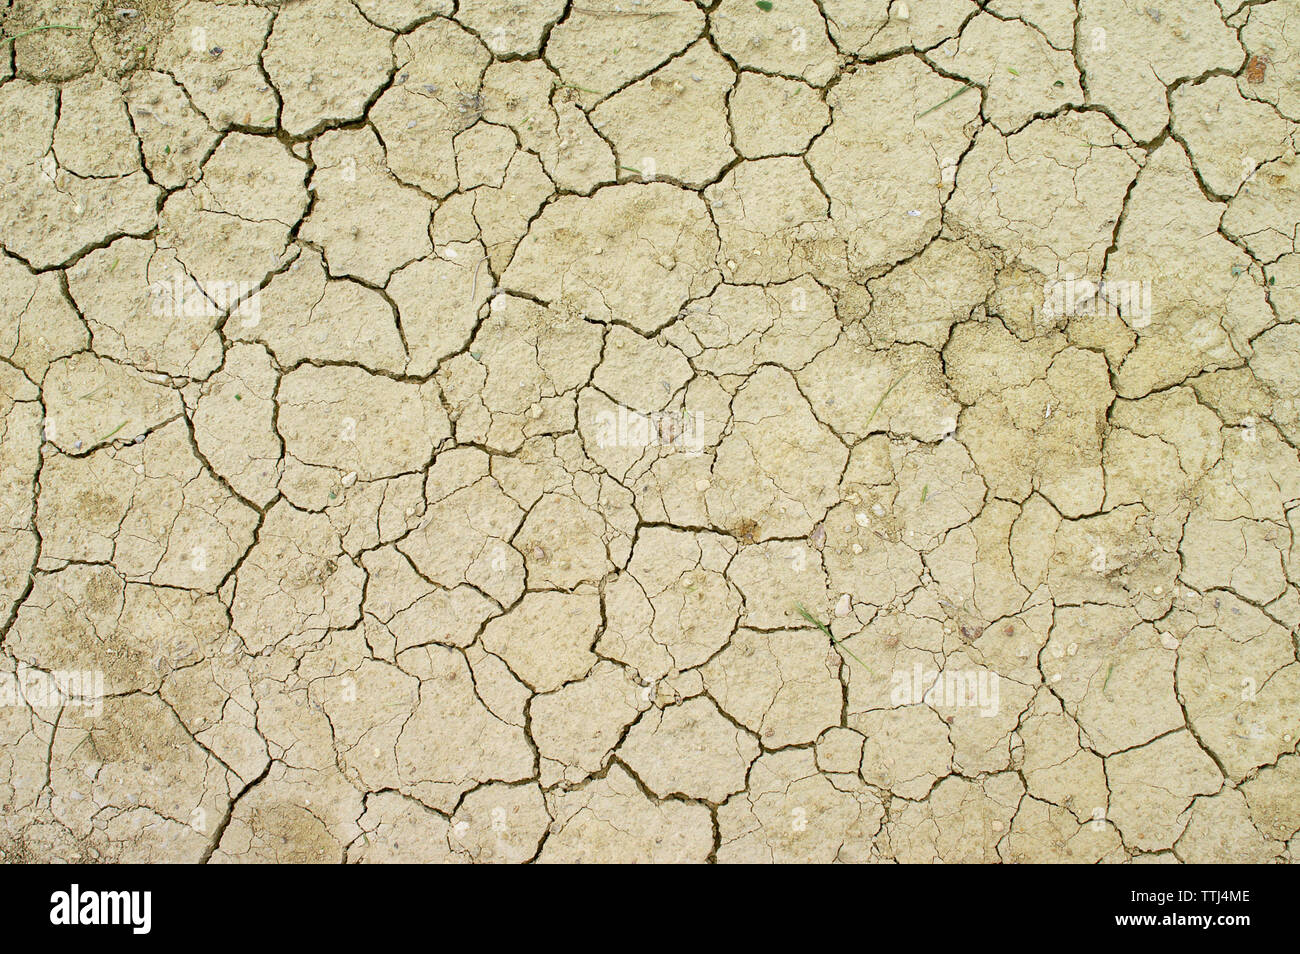 Dry cracks in sandy soil, Malta Stock Photo